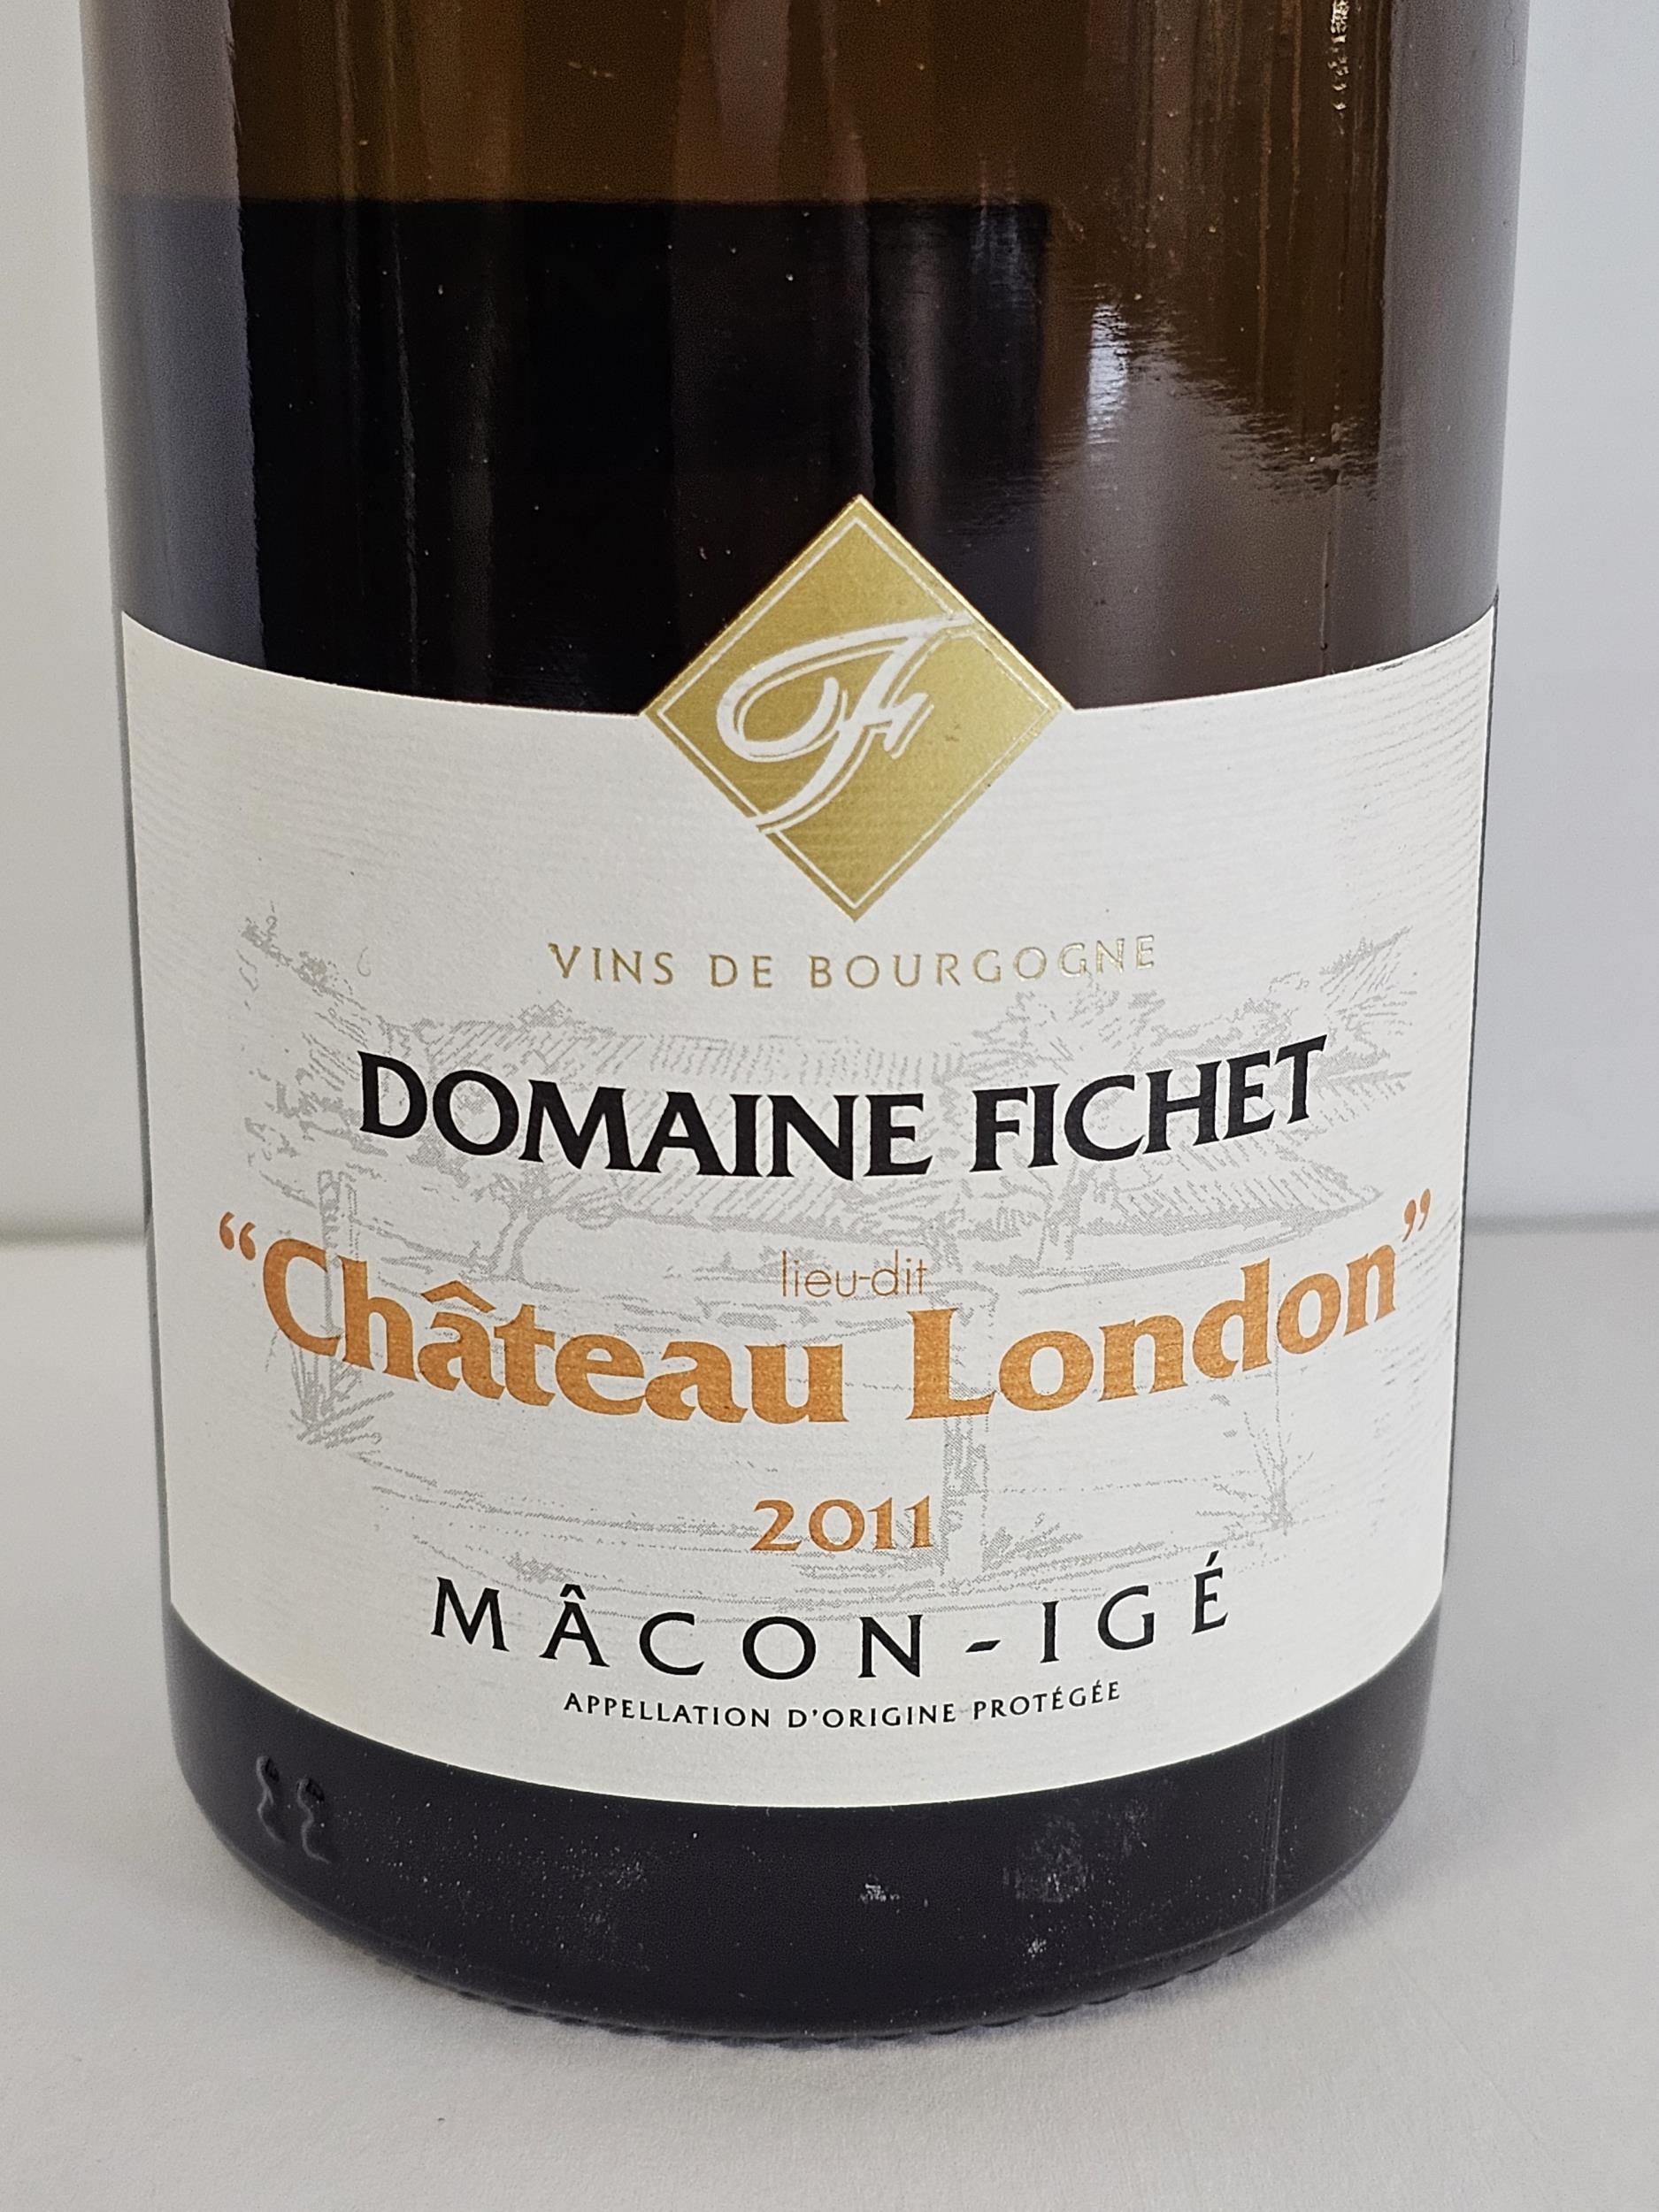 2011 Domaine Fichet Mâcon Igé Château London Burgundy, France. 4 x 75cl bottles - Image 4 of 4